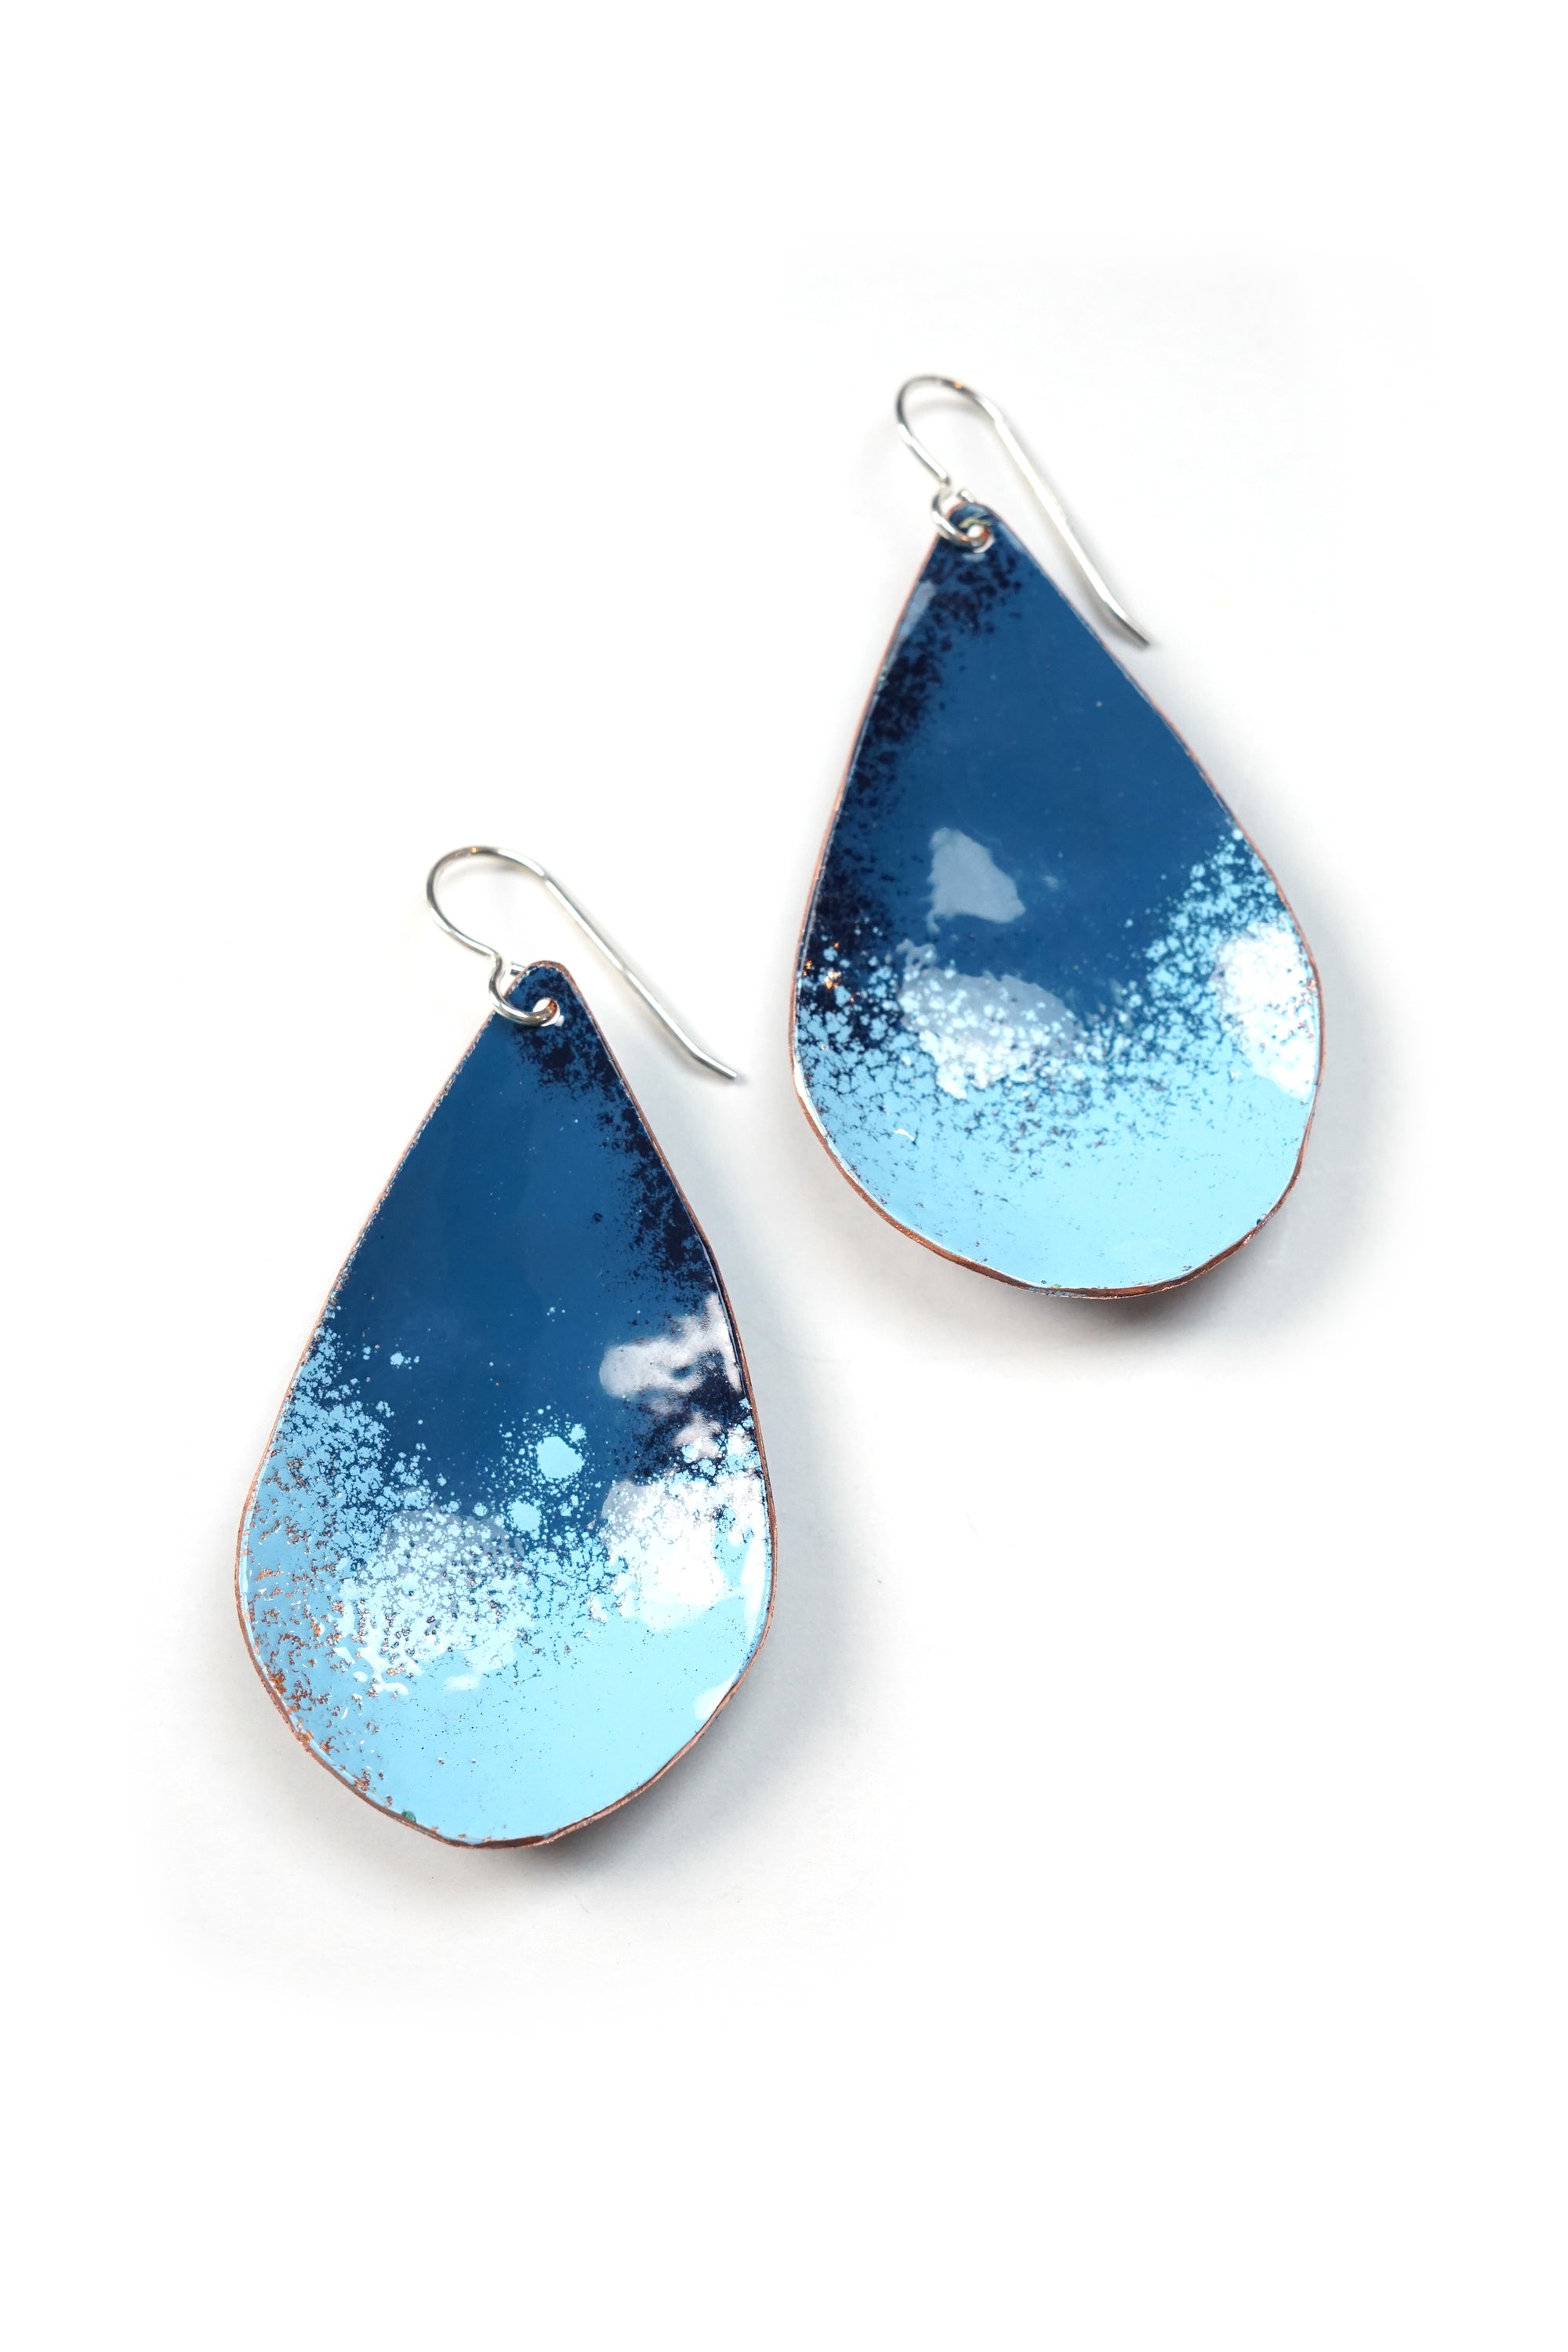 Chroma Earrings in Azure Blue and Light Blue